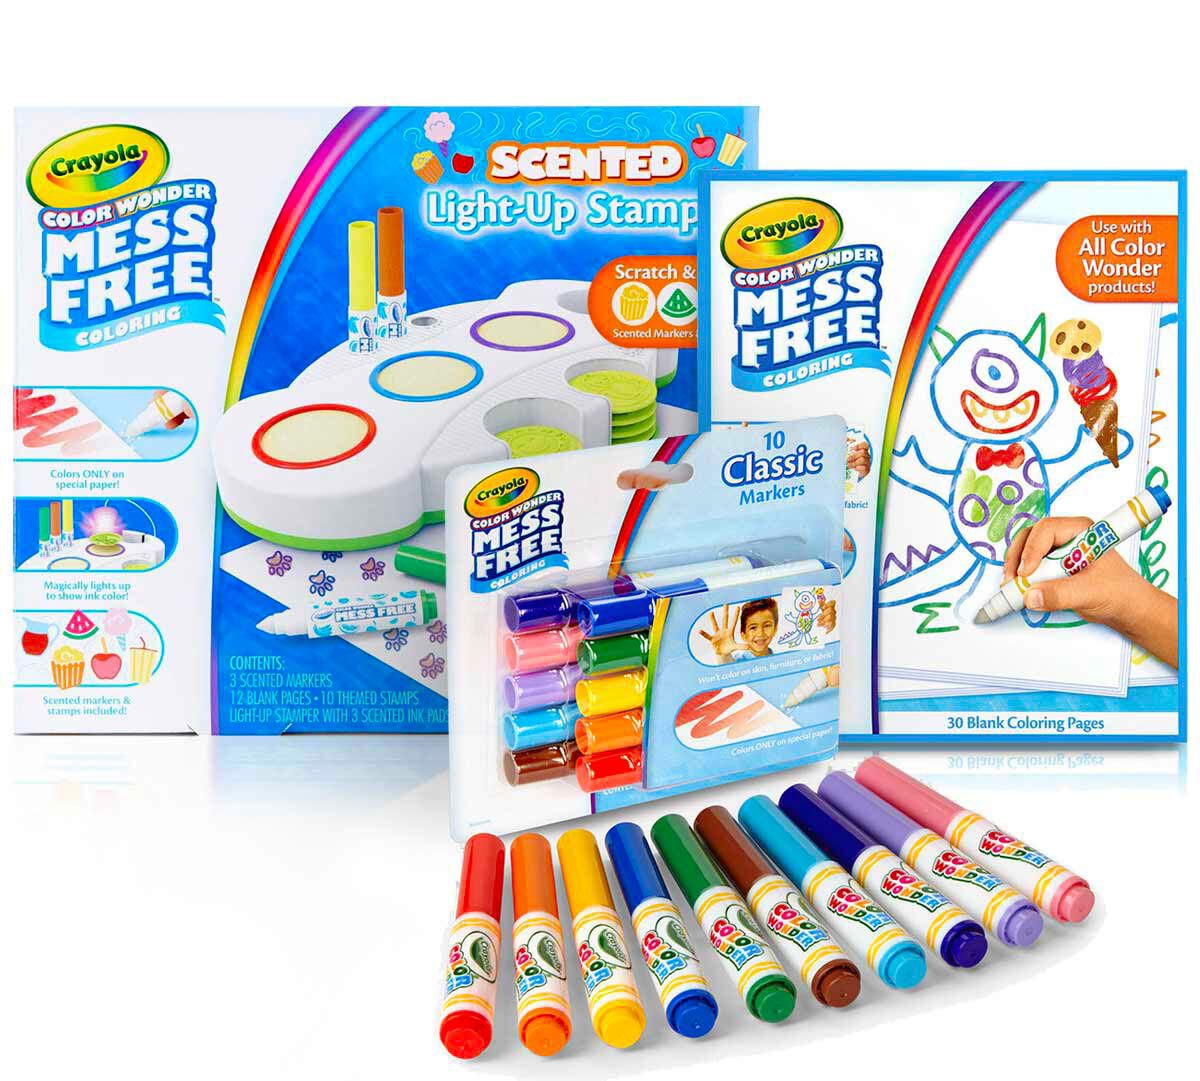 cor e adesivo e livros de colorir explosão de cores Crayola Cor Wonder 